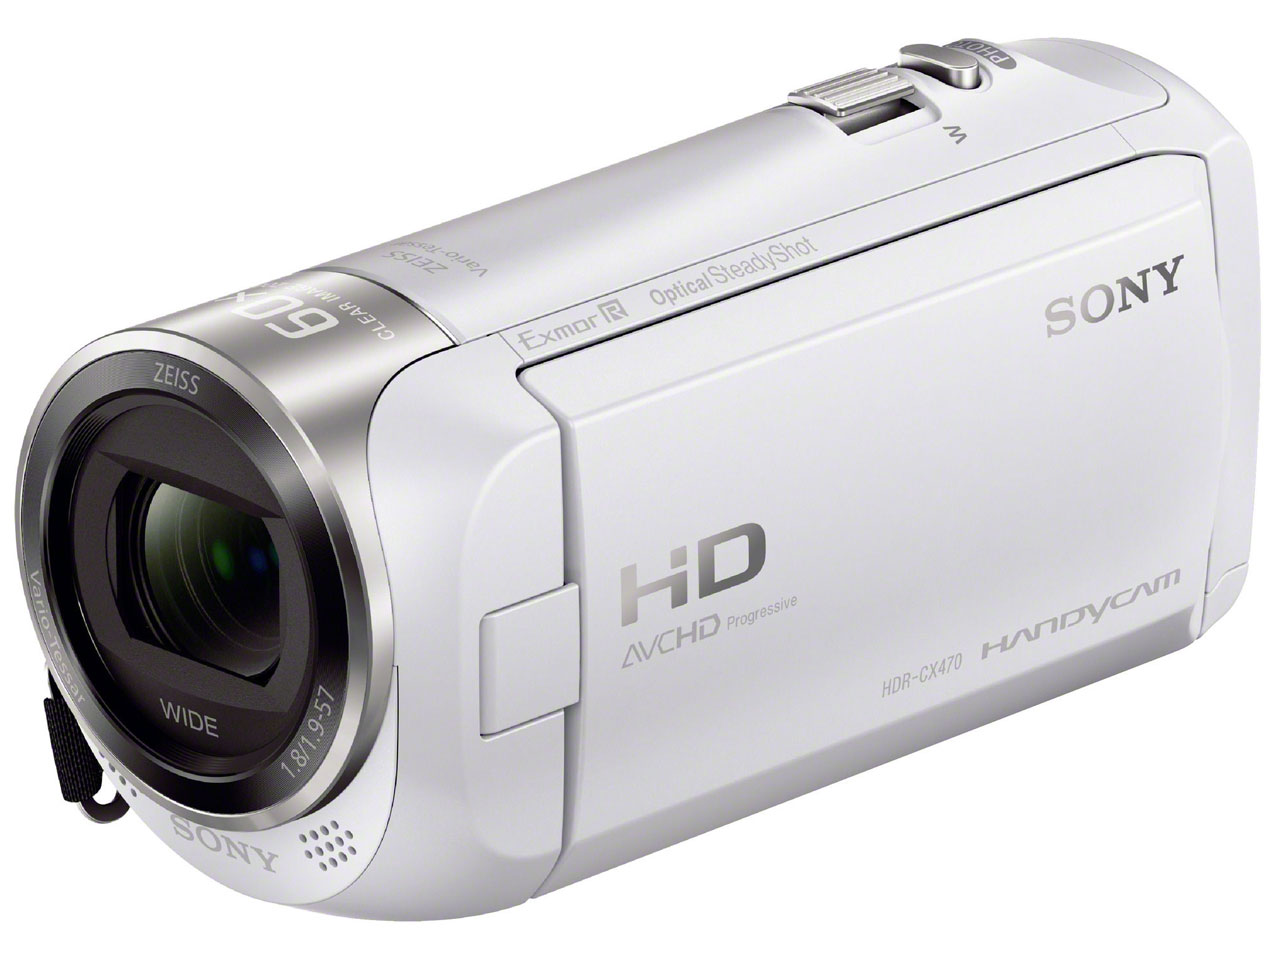 価格.com - HDR-CX470 (W) [ホワイト] の製品画像